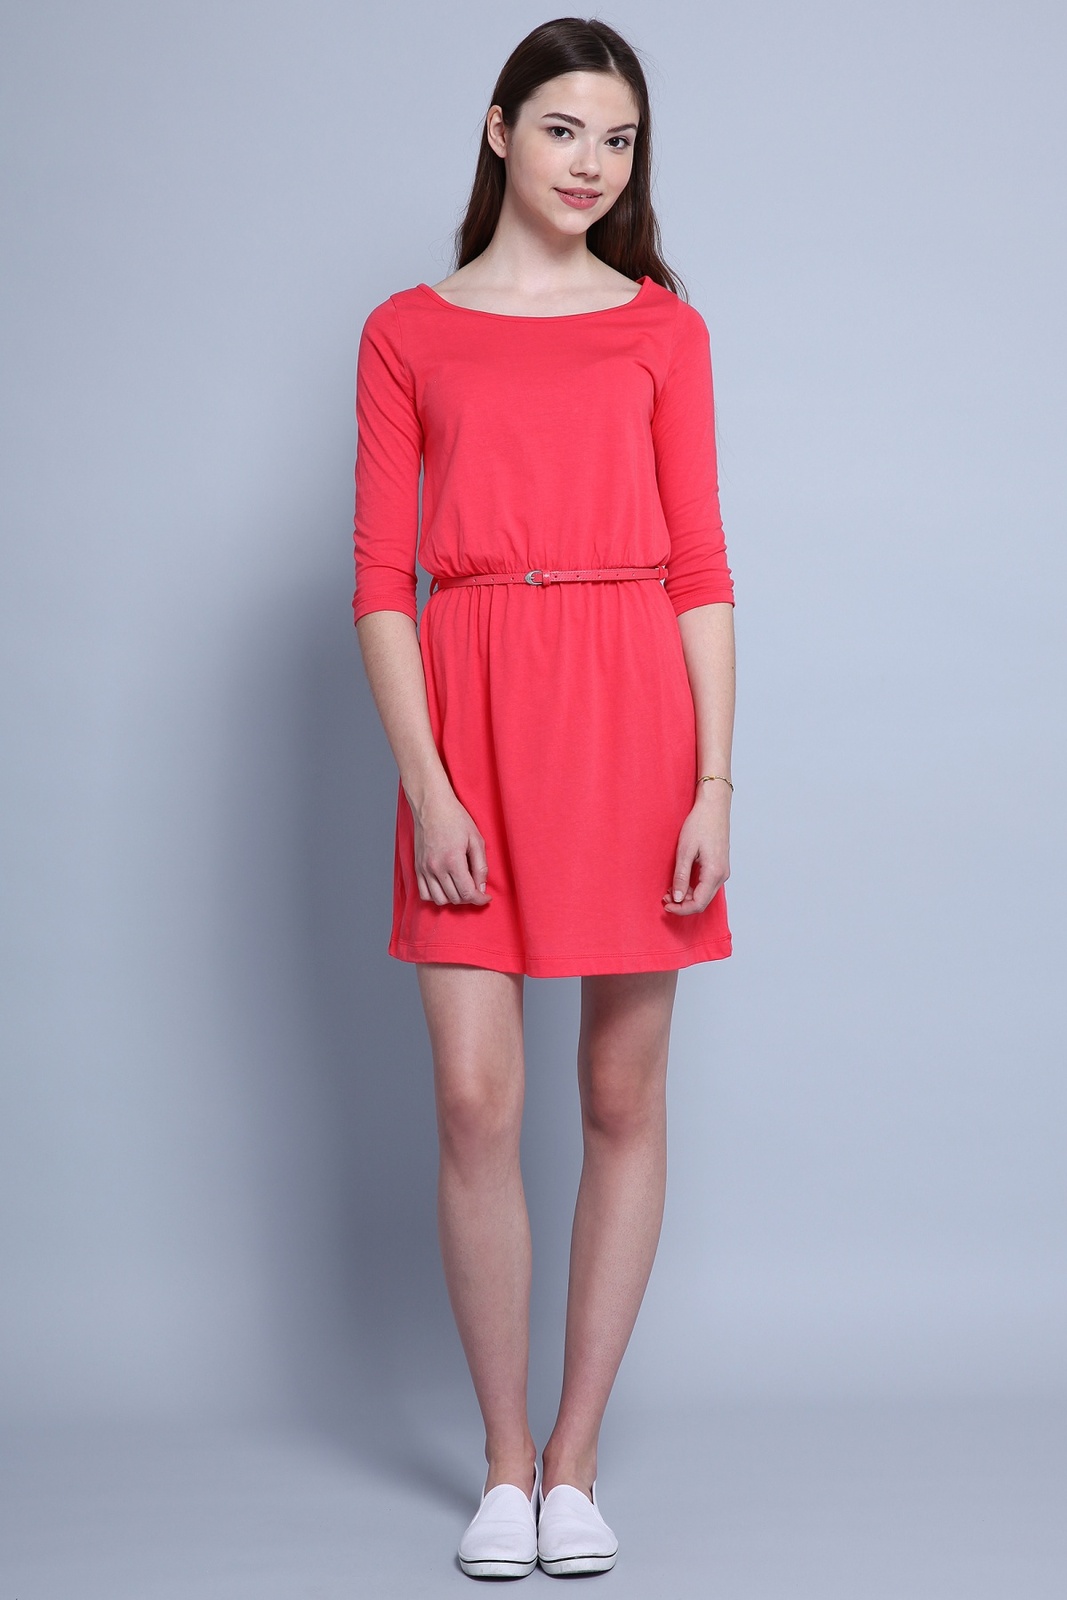 Terranova női egyszínű kereknyakú ruha 2015.02.28 fotója